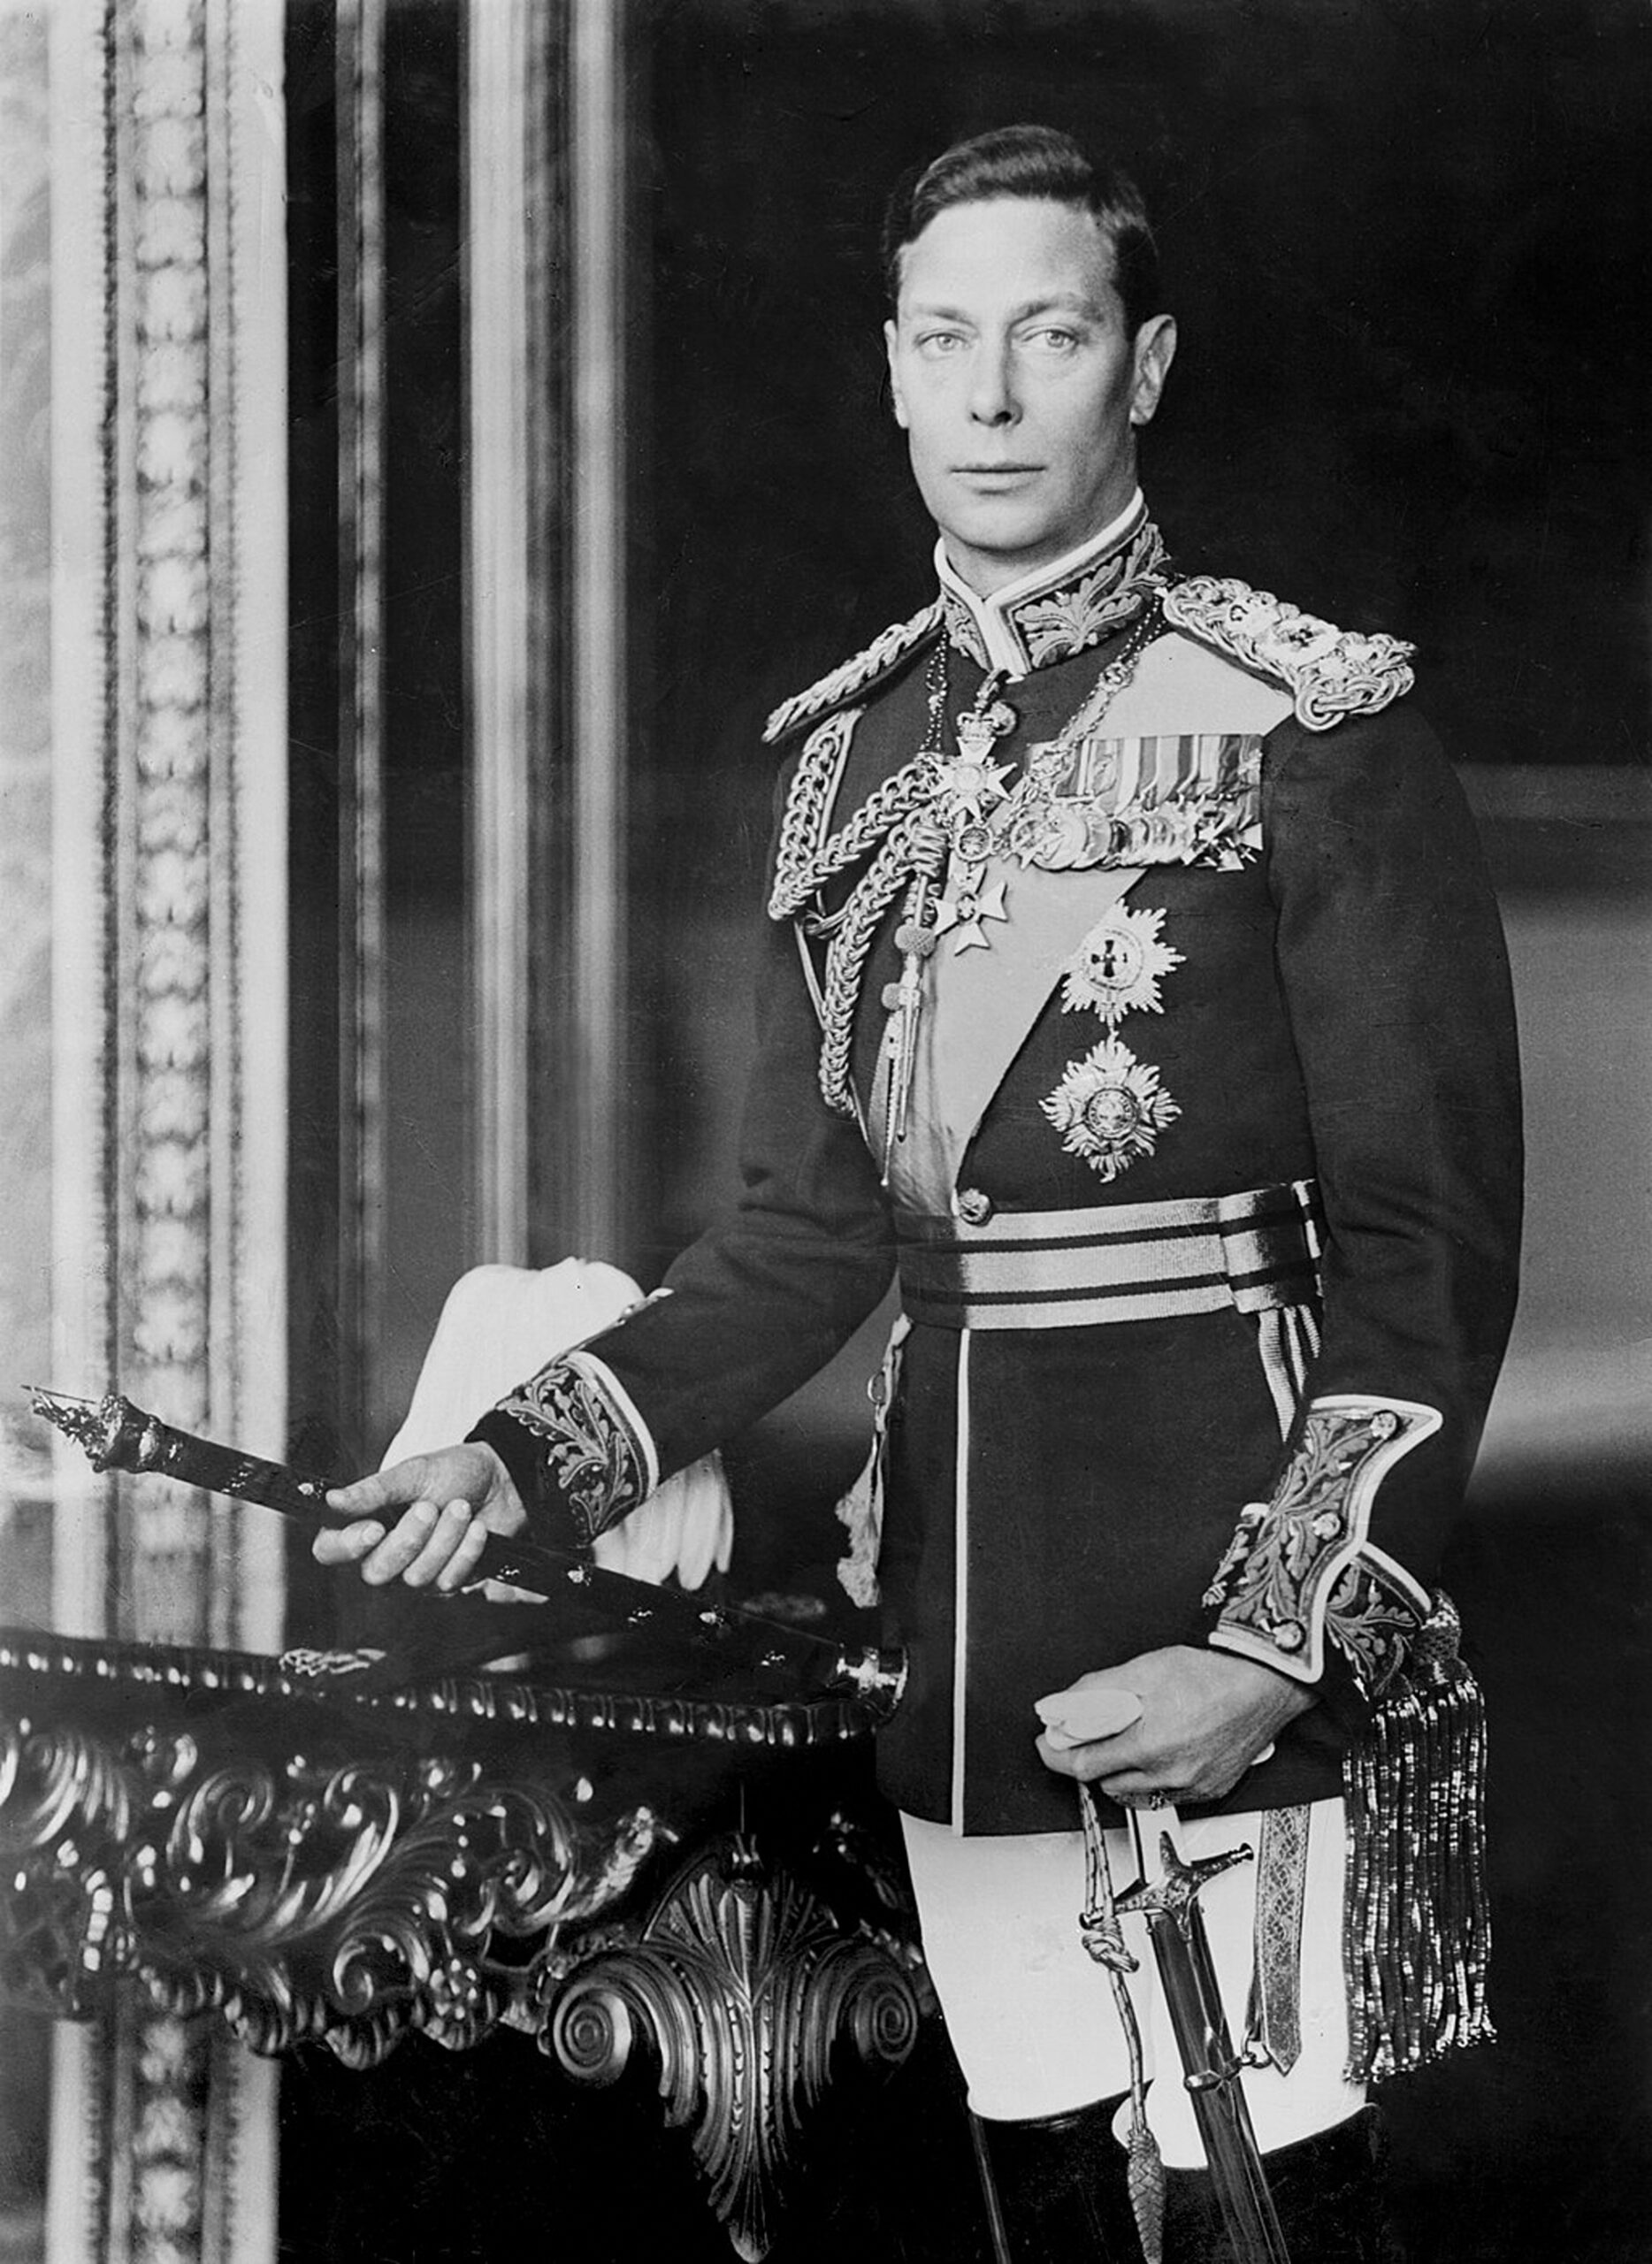 Regele George al VI-lea